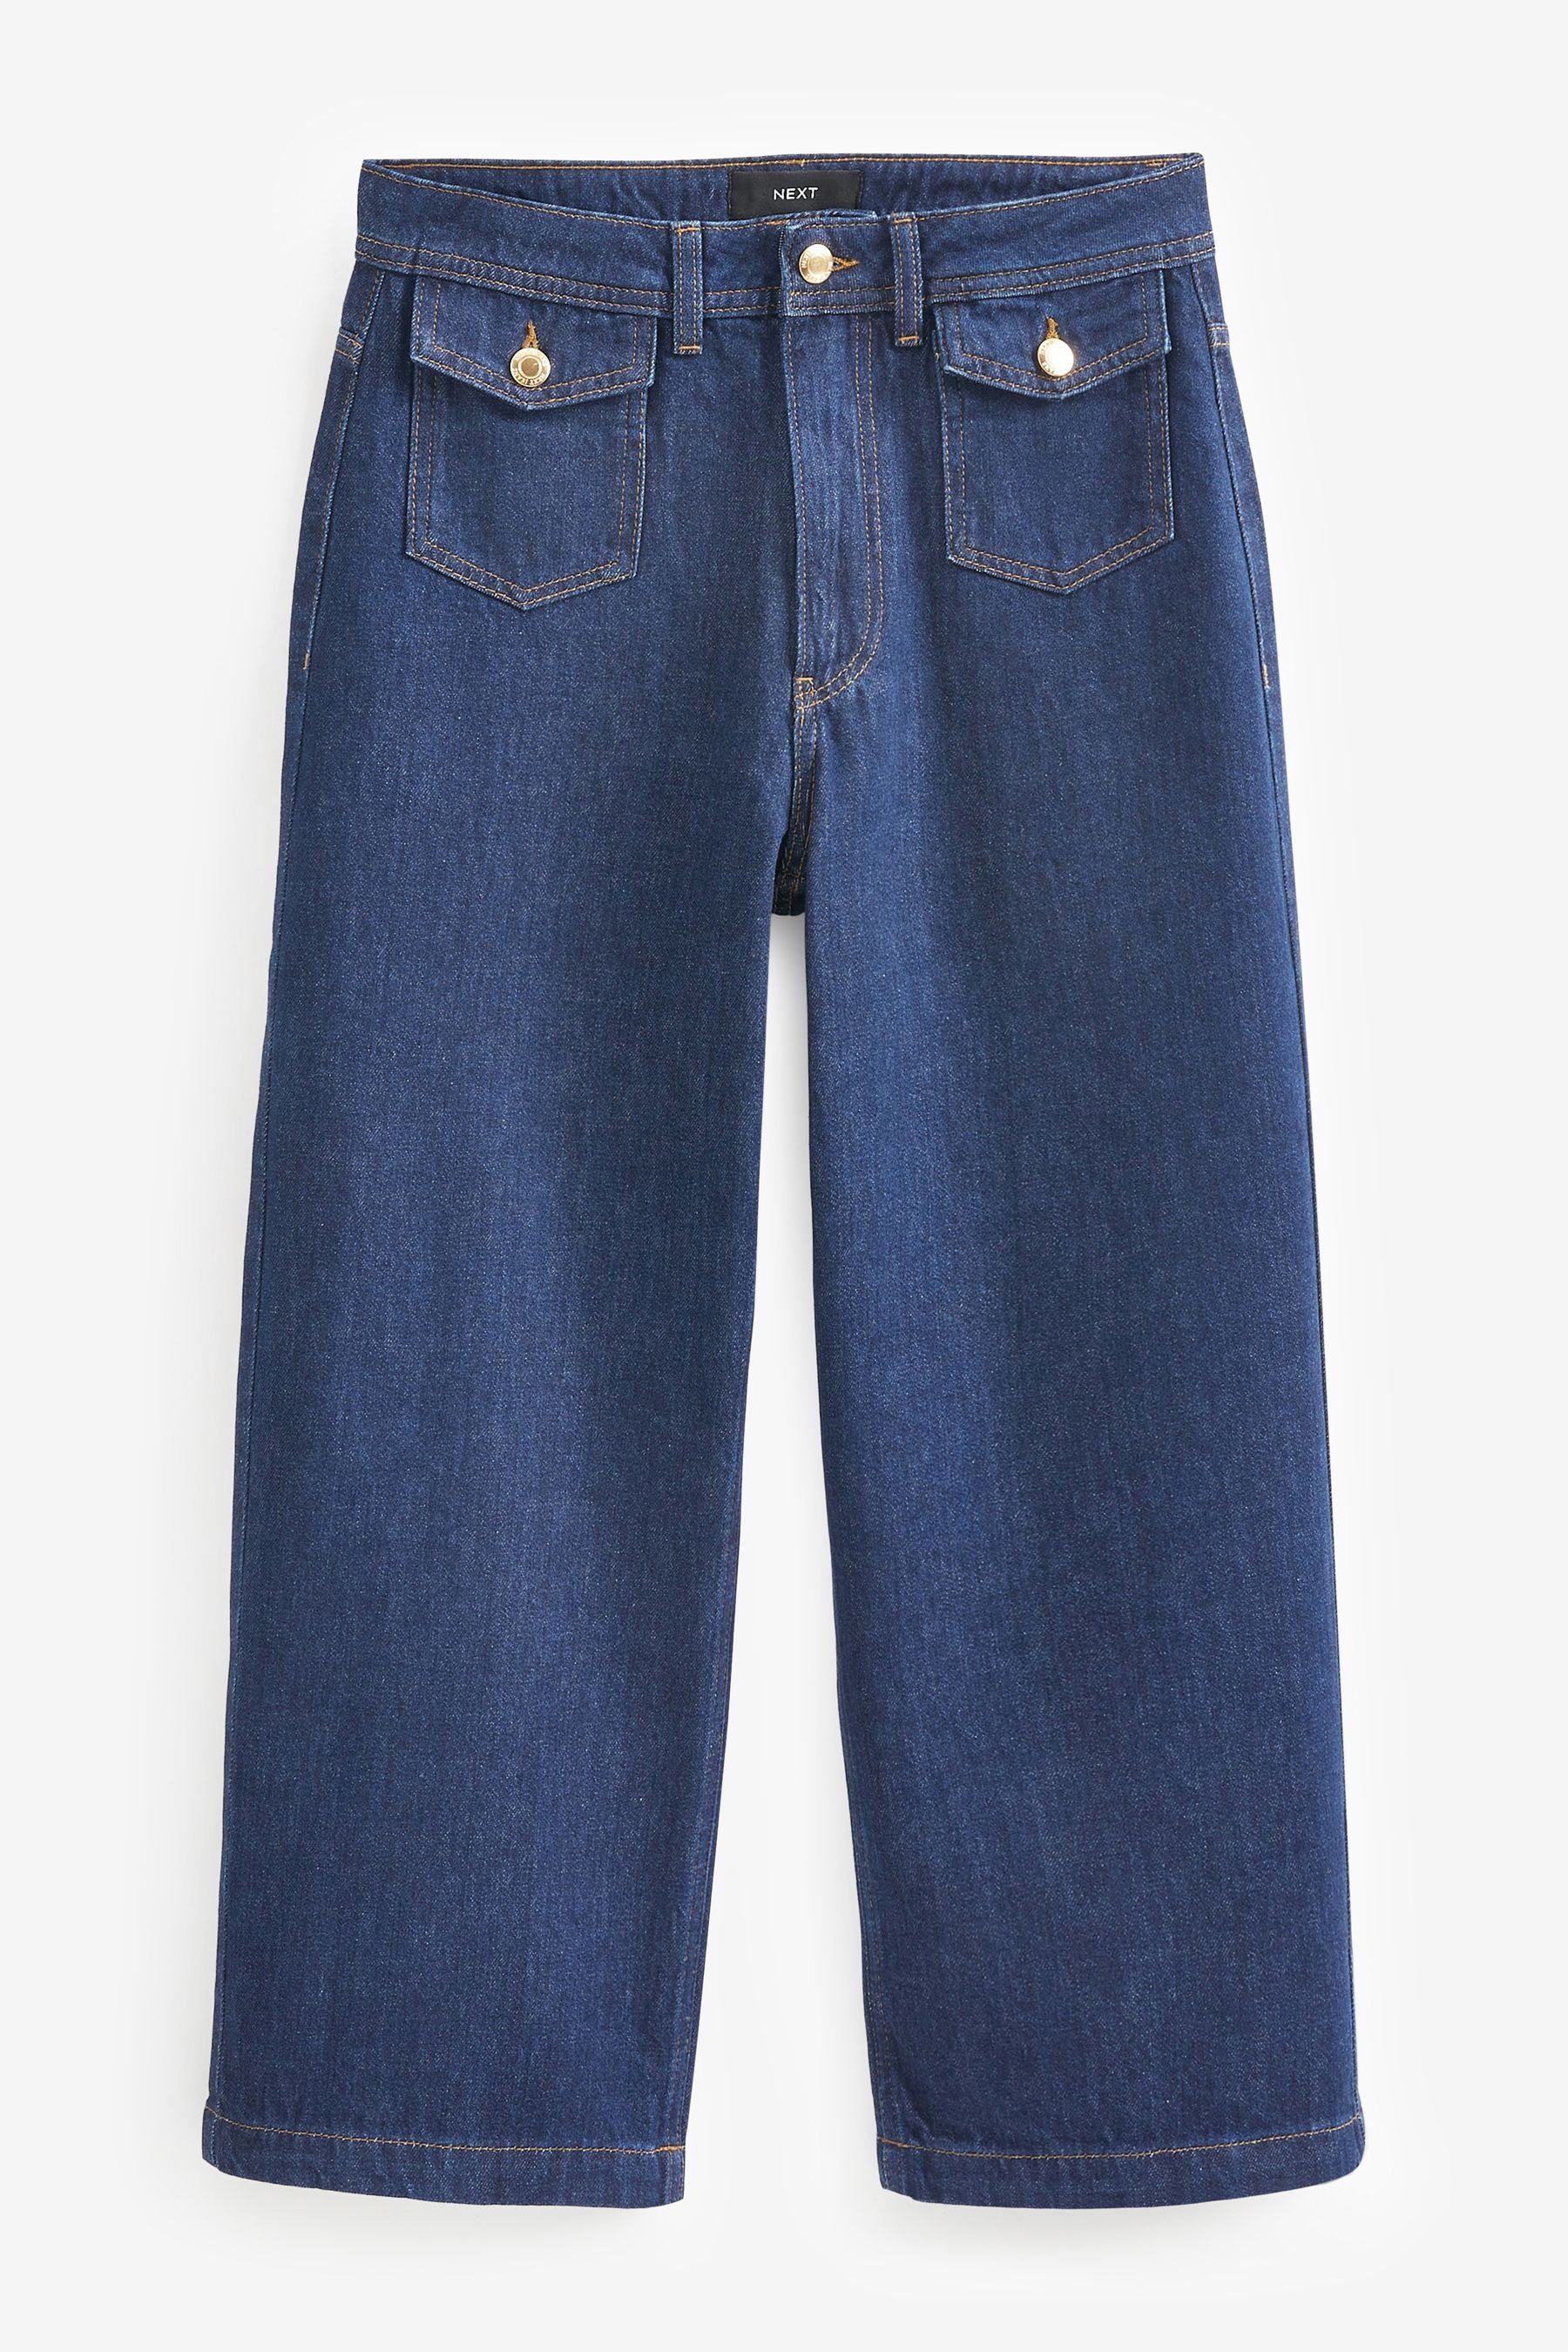 Next Caprijeans Cropped-Jeans mit weitem Bein, aufgesetzte Tasche (1-tlg)